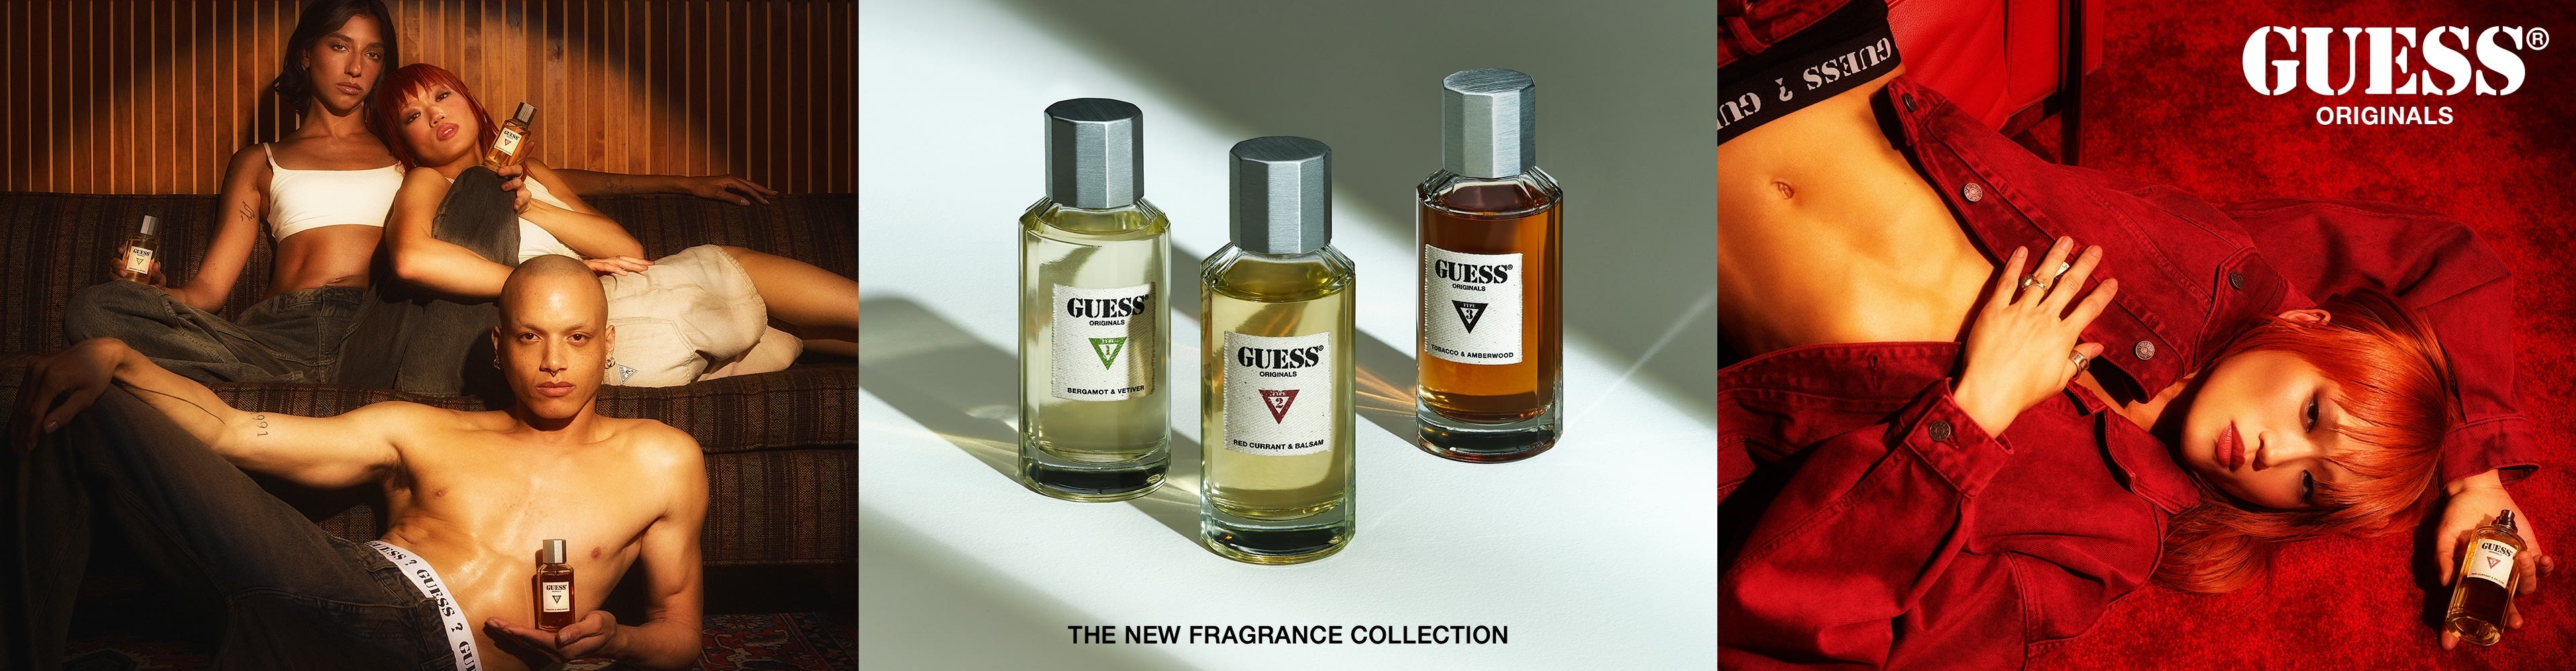 GUESS Originals Fragrance